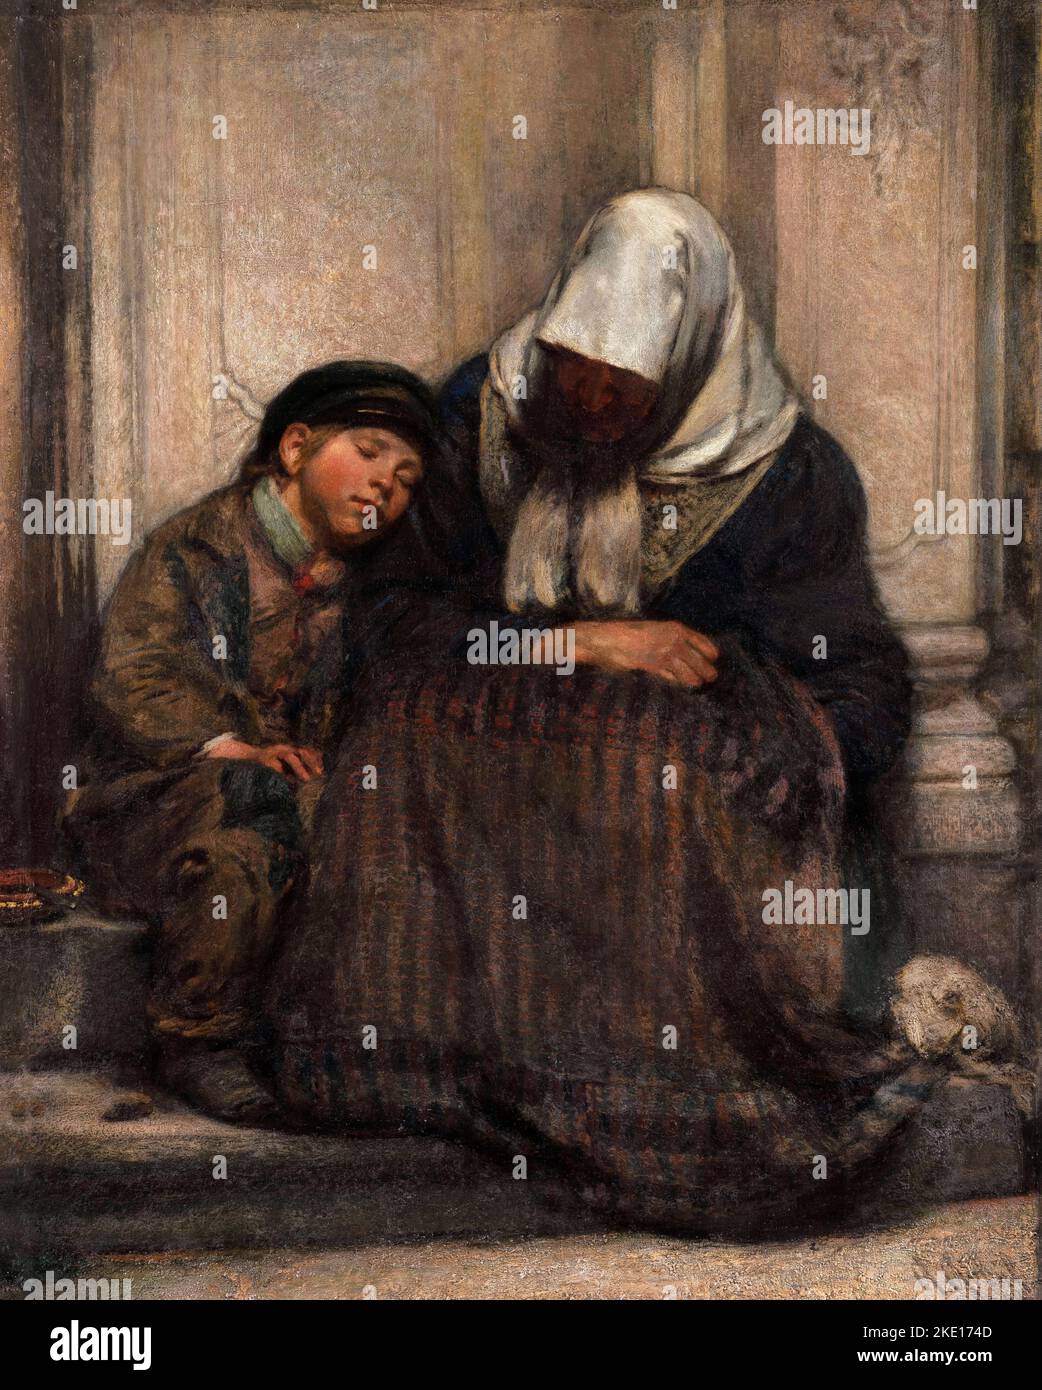 Pauvres par Angilbert Göbel (1821-1882), huile sur toile, 1858 Banque D'Images